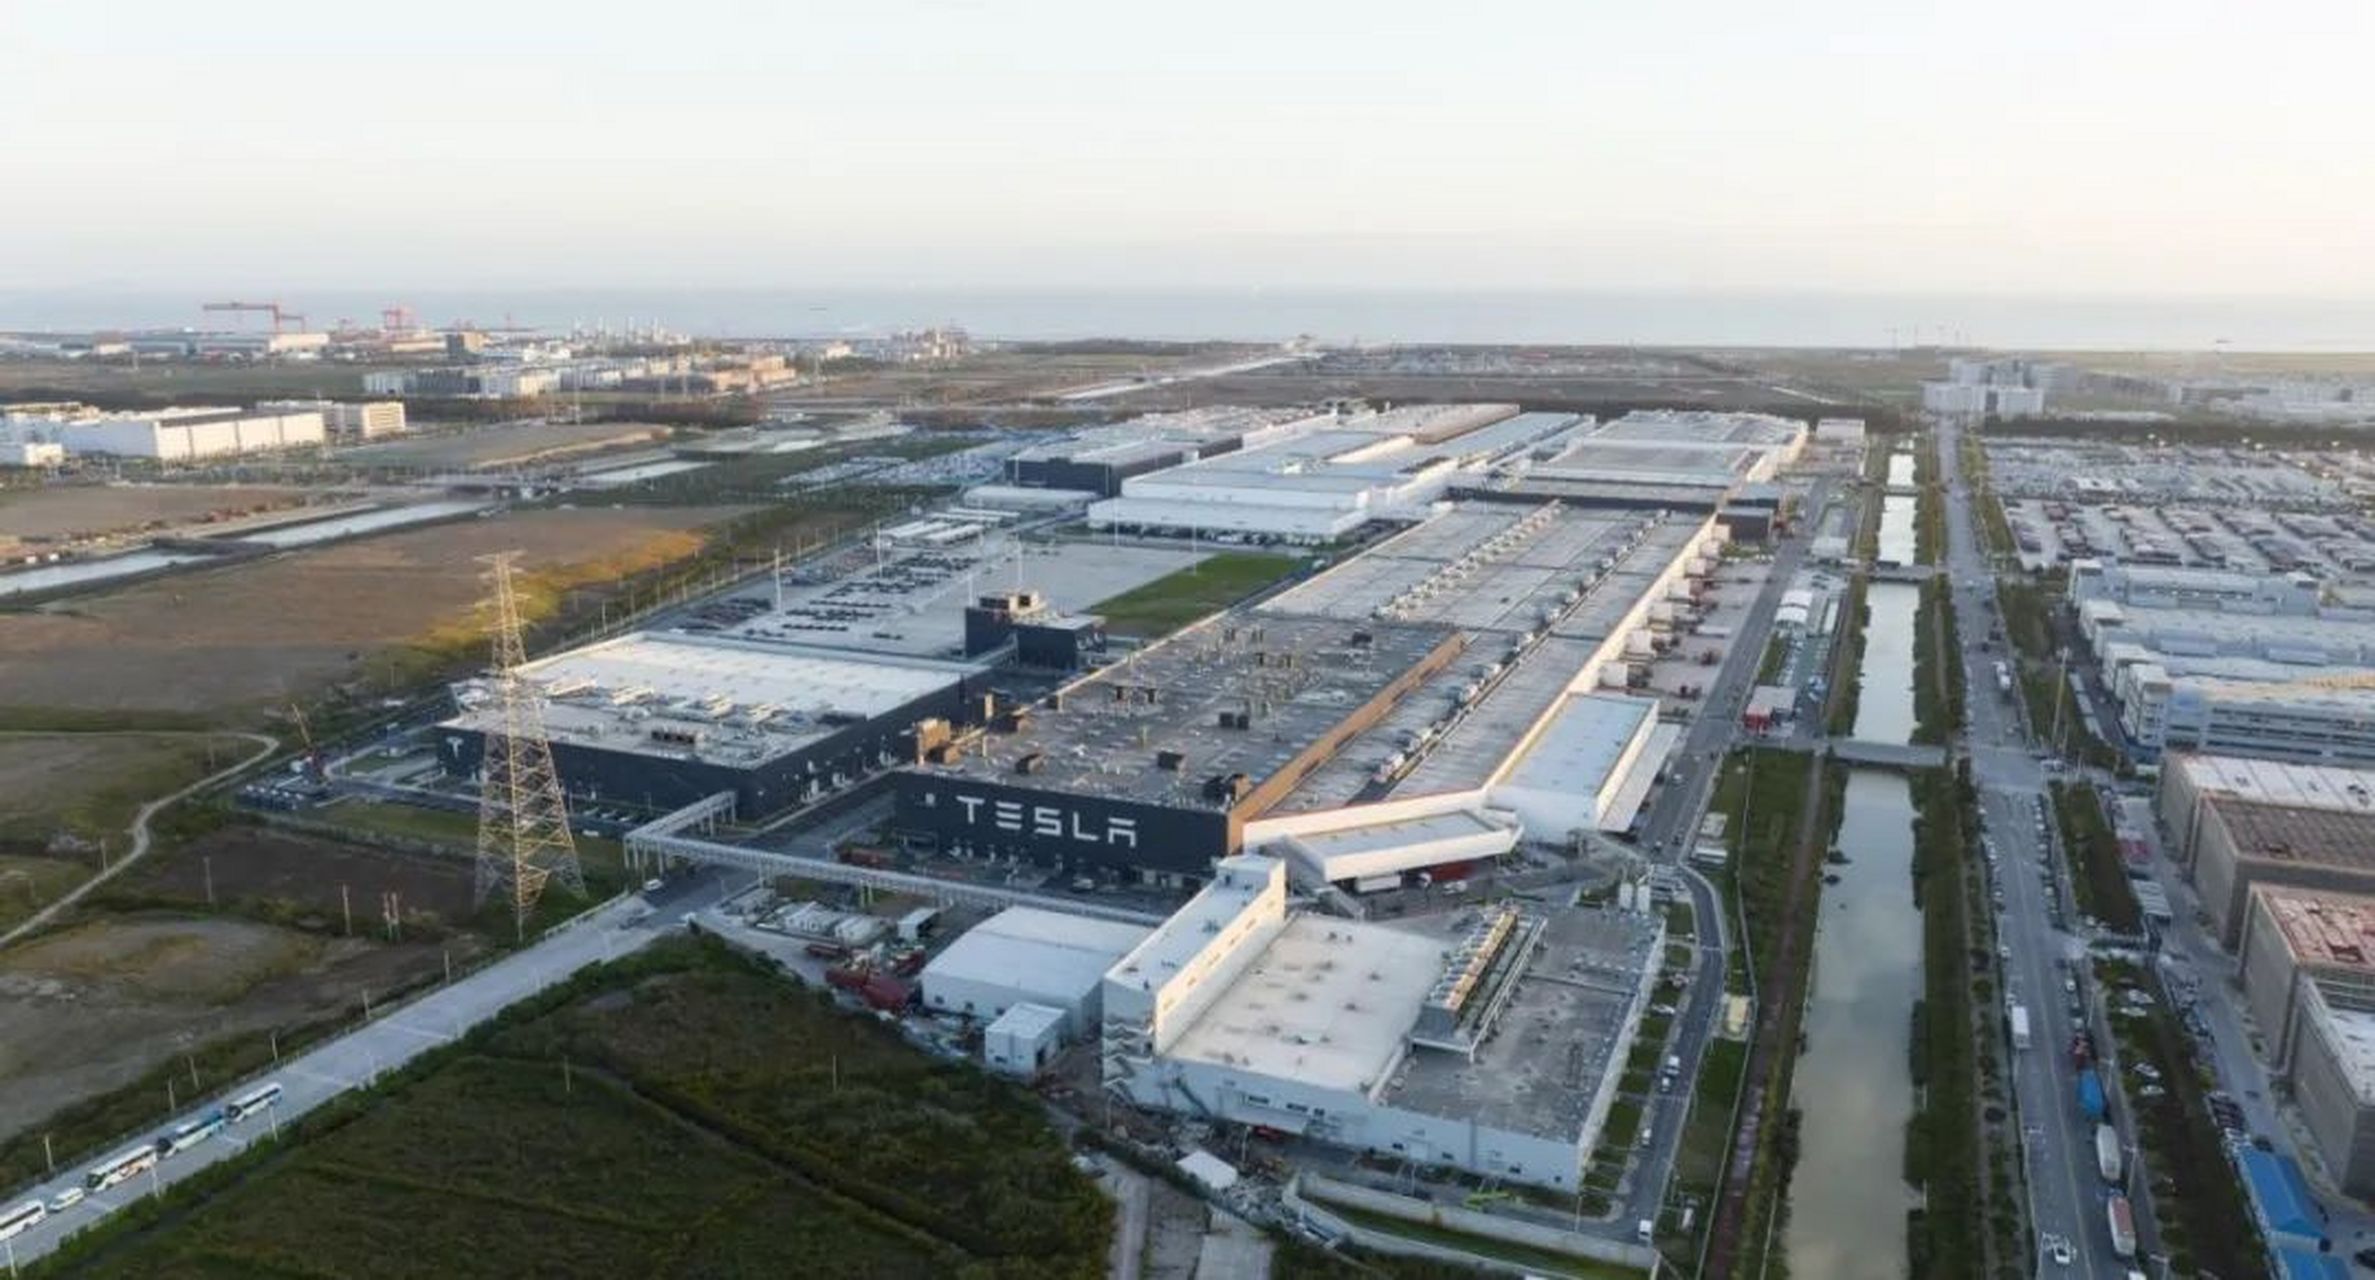 传特斯拉上海超级工厂开始裁员,特斯拉中国的上海超级工厂开始对电池